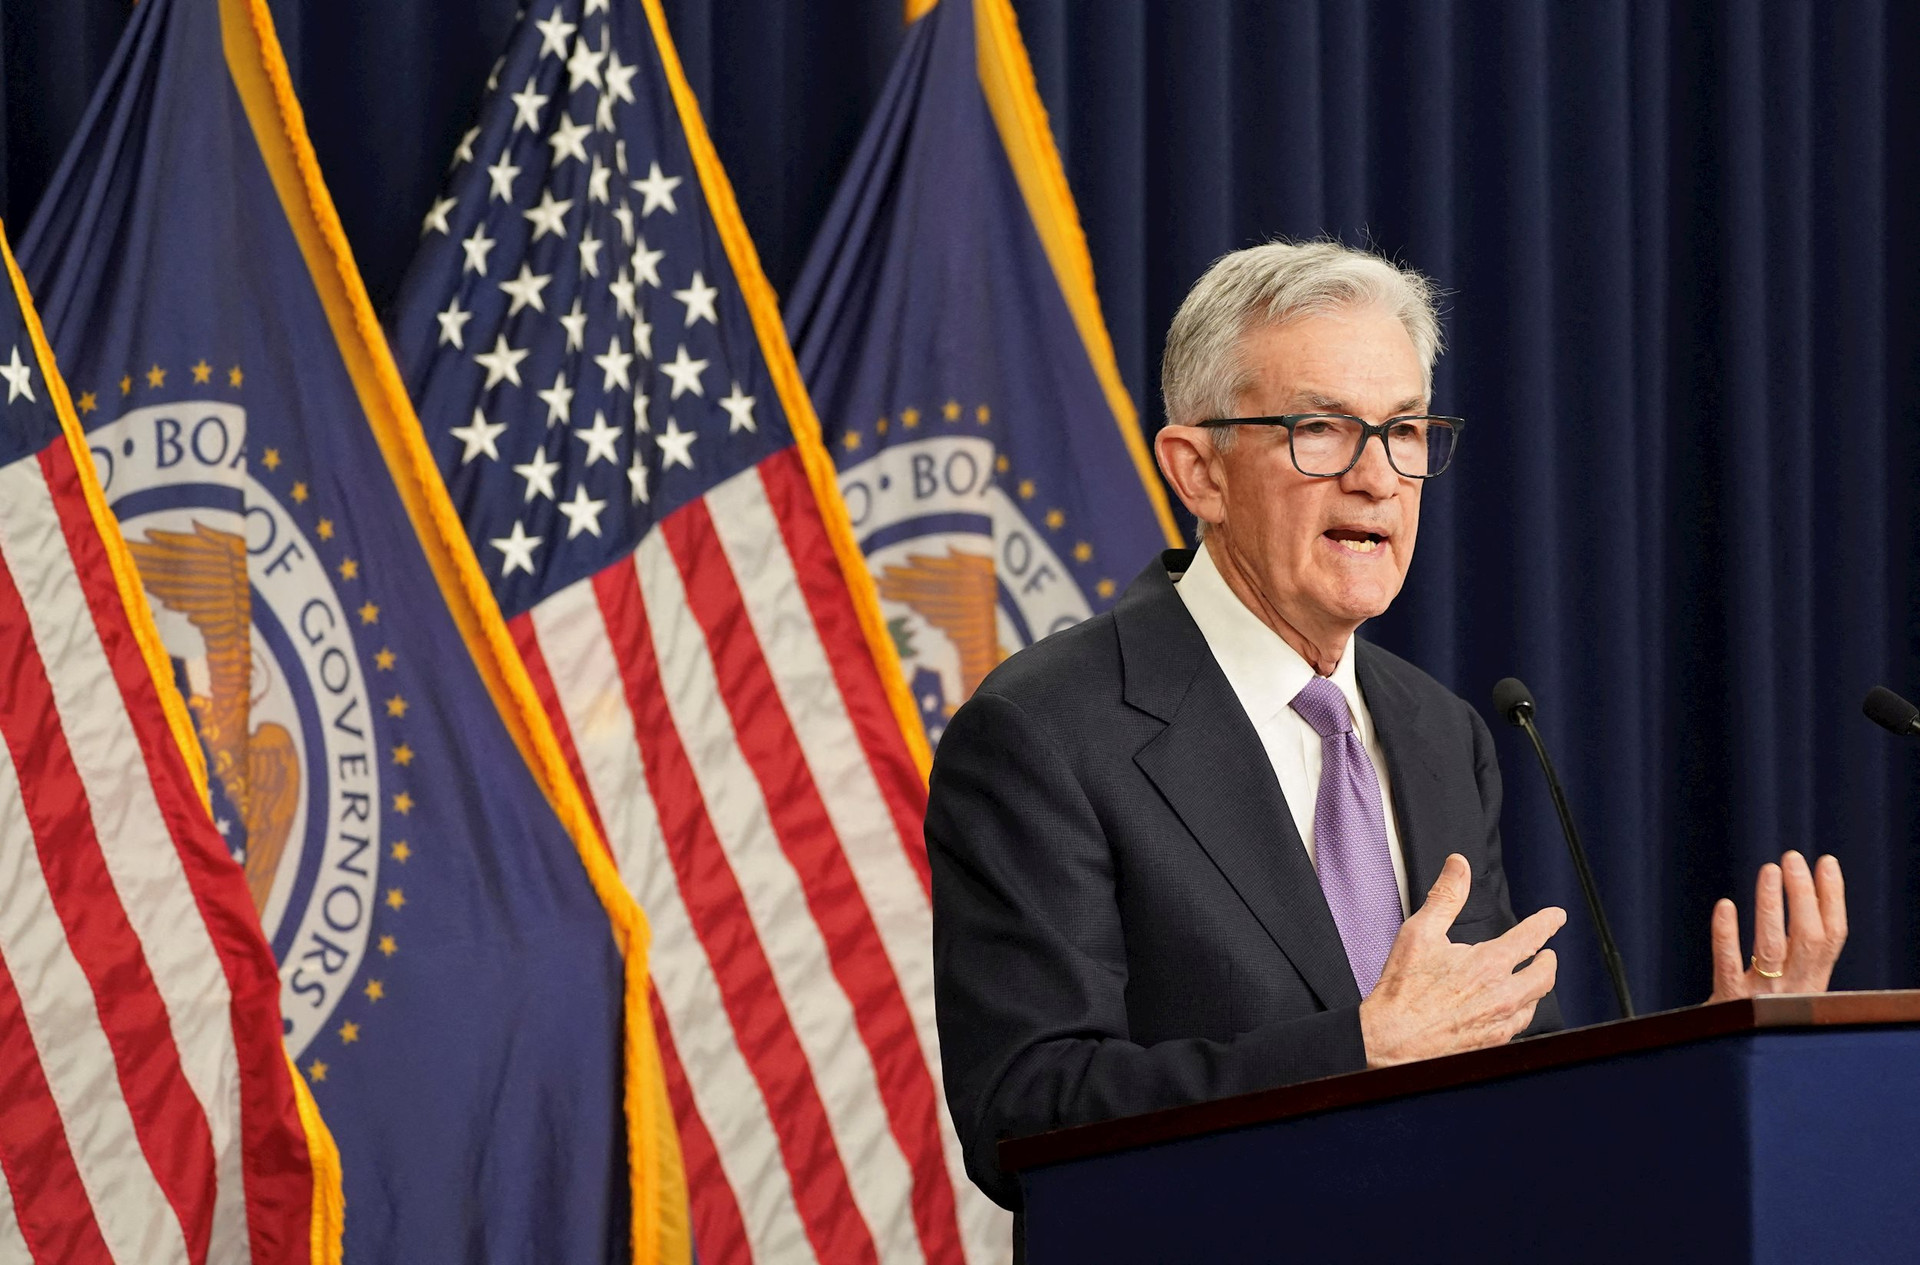 Biên bản cuộc họp tháng 6 được công bố: Fed chưa sẵn sàng cắt giảm lãi suất, cho đến khi điều này xảy ra